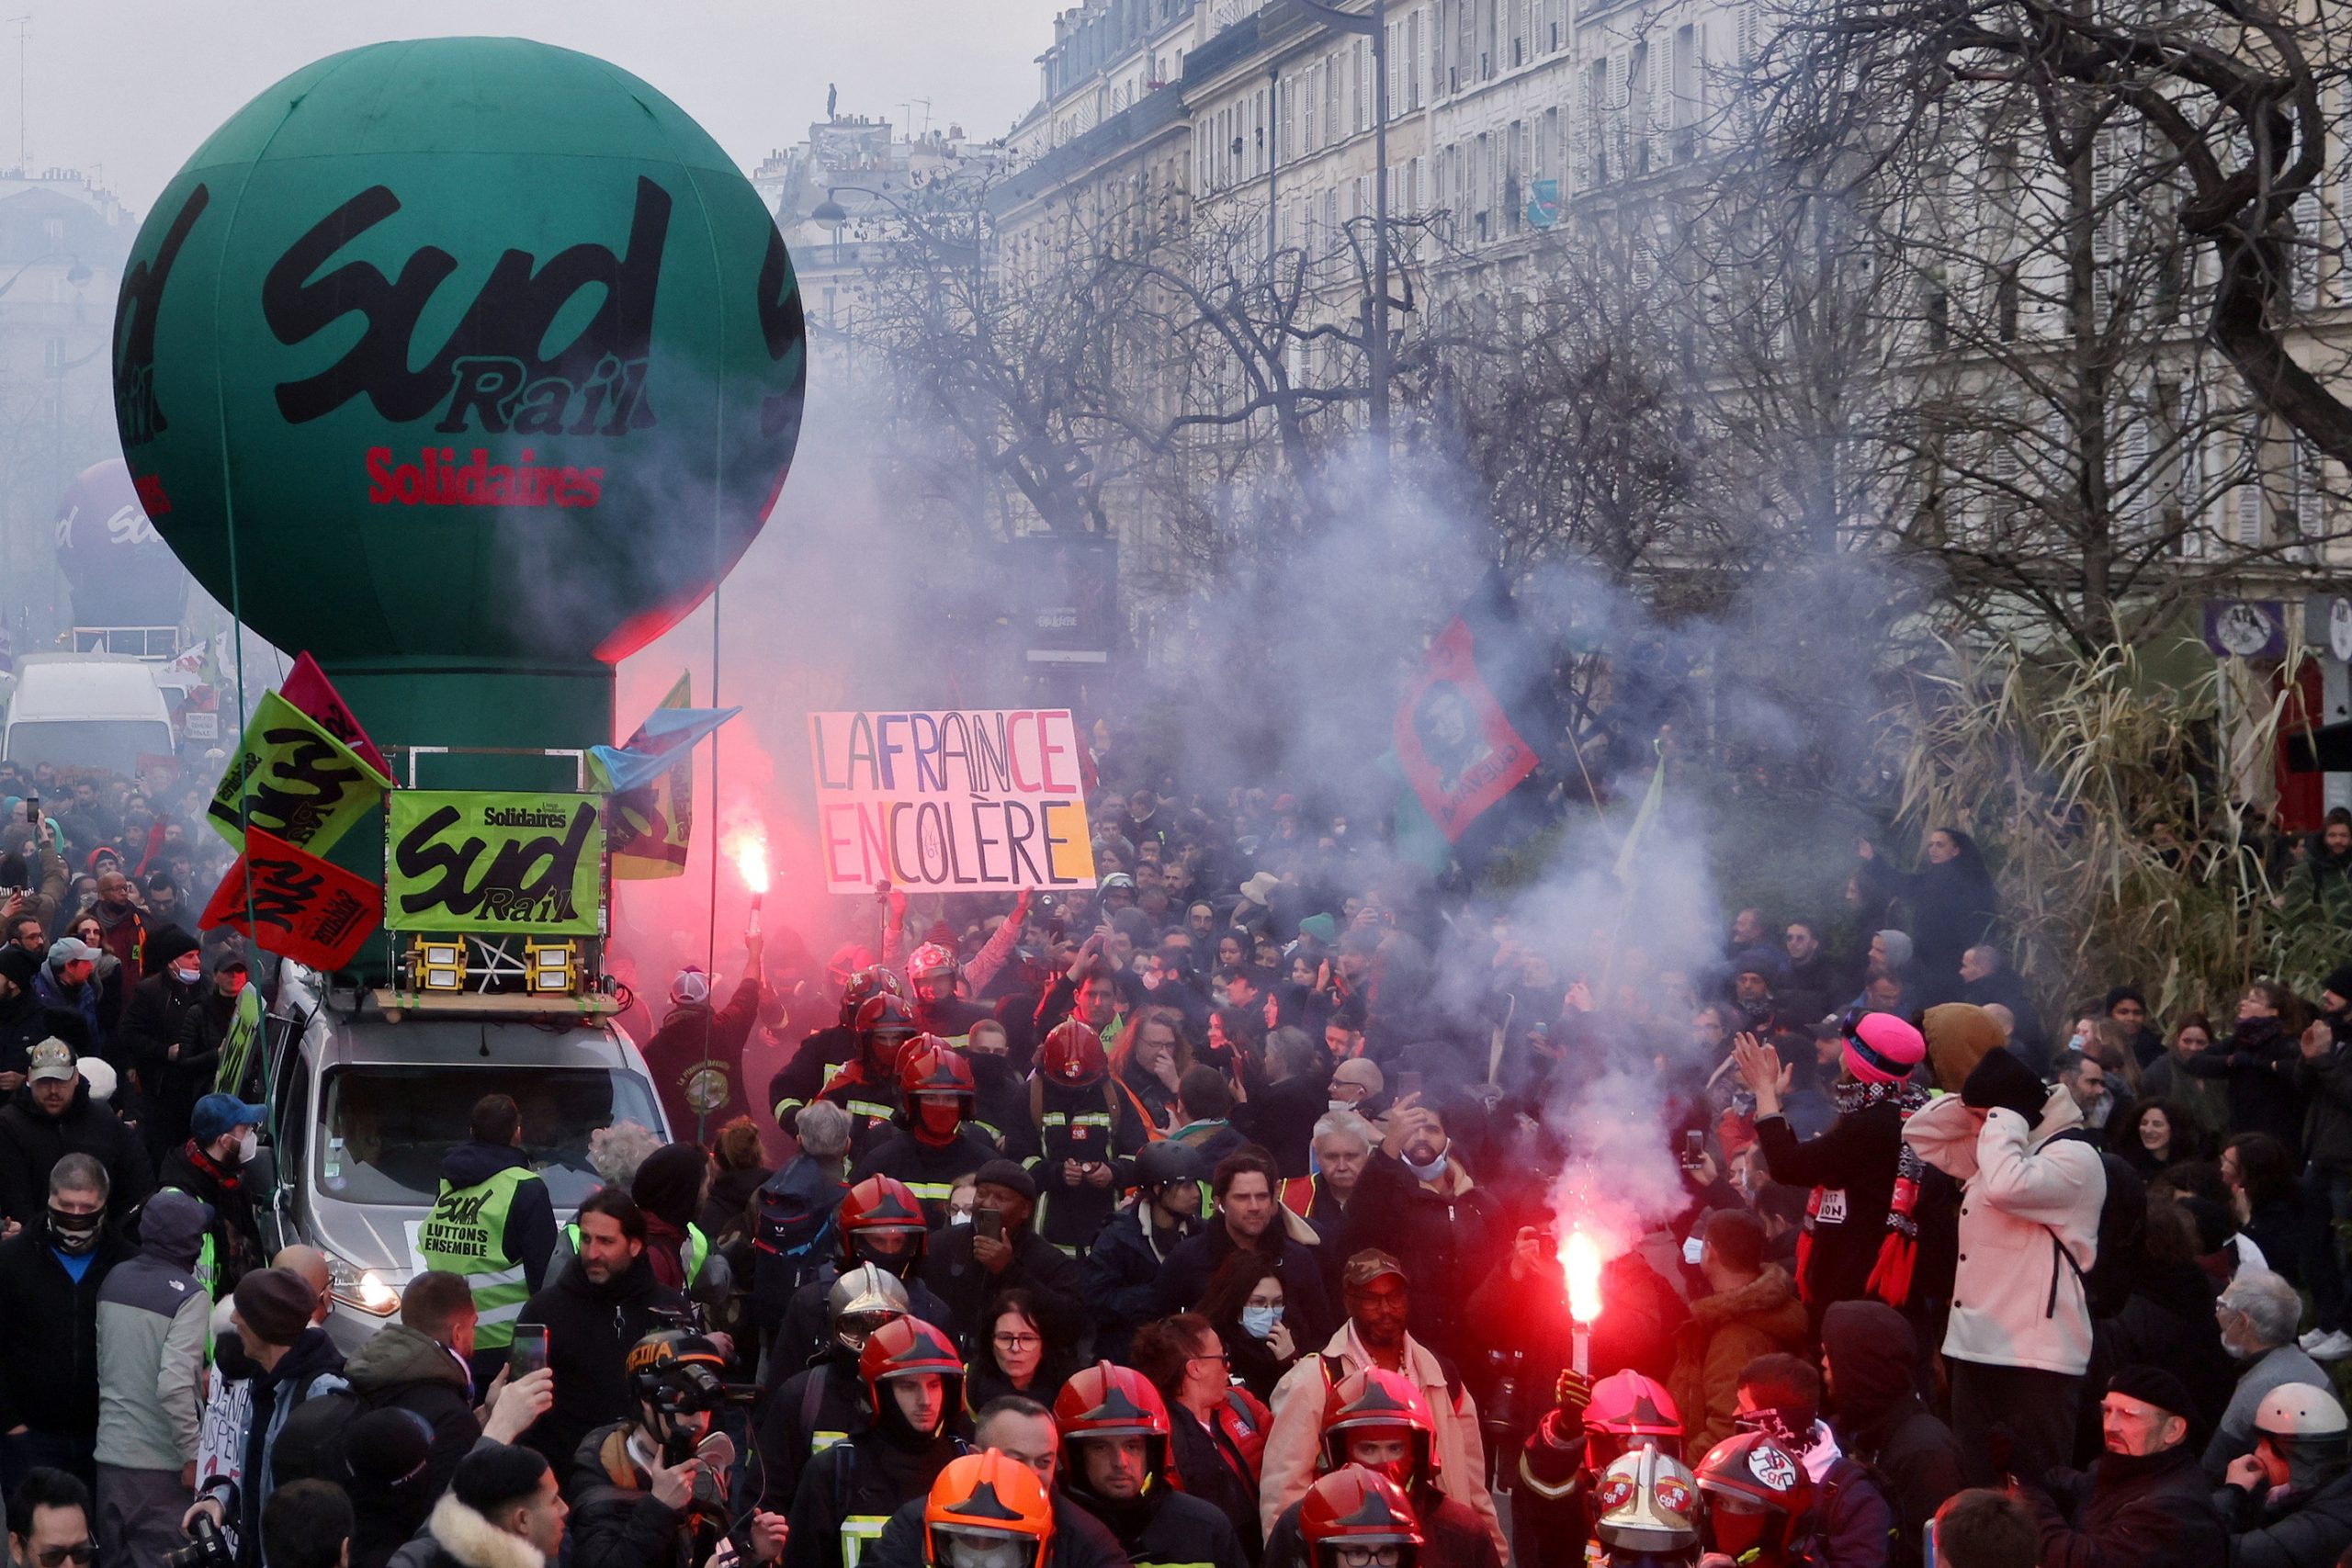 Γαλλία: Νέα εβδομάδα απεργιών – Διαβουλεύσεις με κυβέρνηση χωρίς προσδοκίες